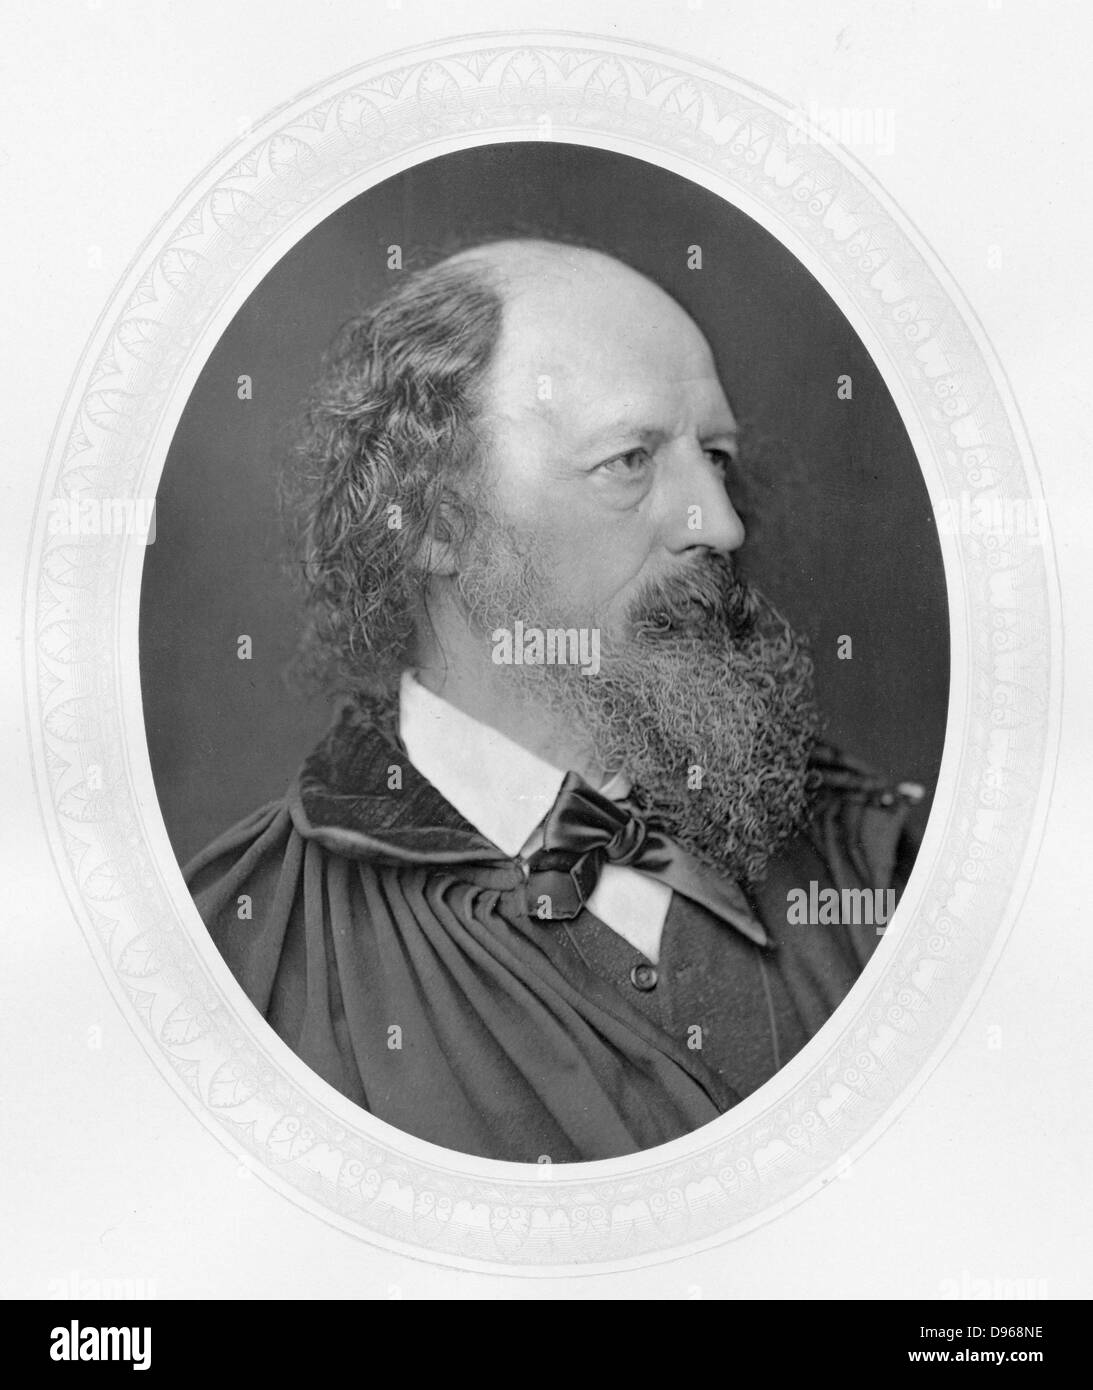 Alfred Tennyson, lst Baron Tennyson (1809-1893), englischer Dichter. Gelungen Wordsworth als Poet Laureate 1850. Foto veröffentlicht c 1880. Woodburytype Stockfoto